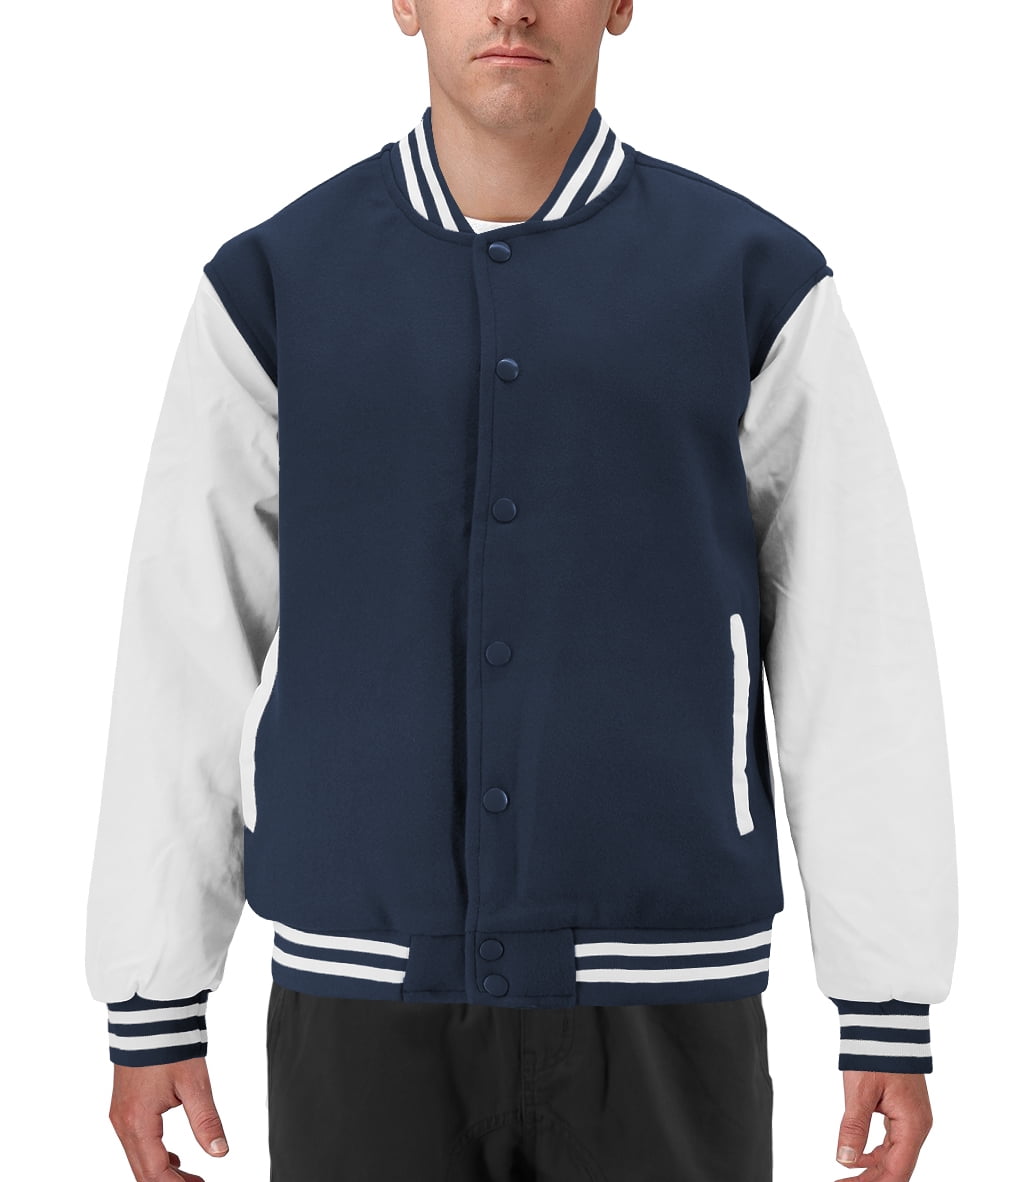 Navy Blue and Grey Varsity Jacket